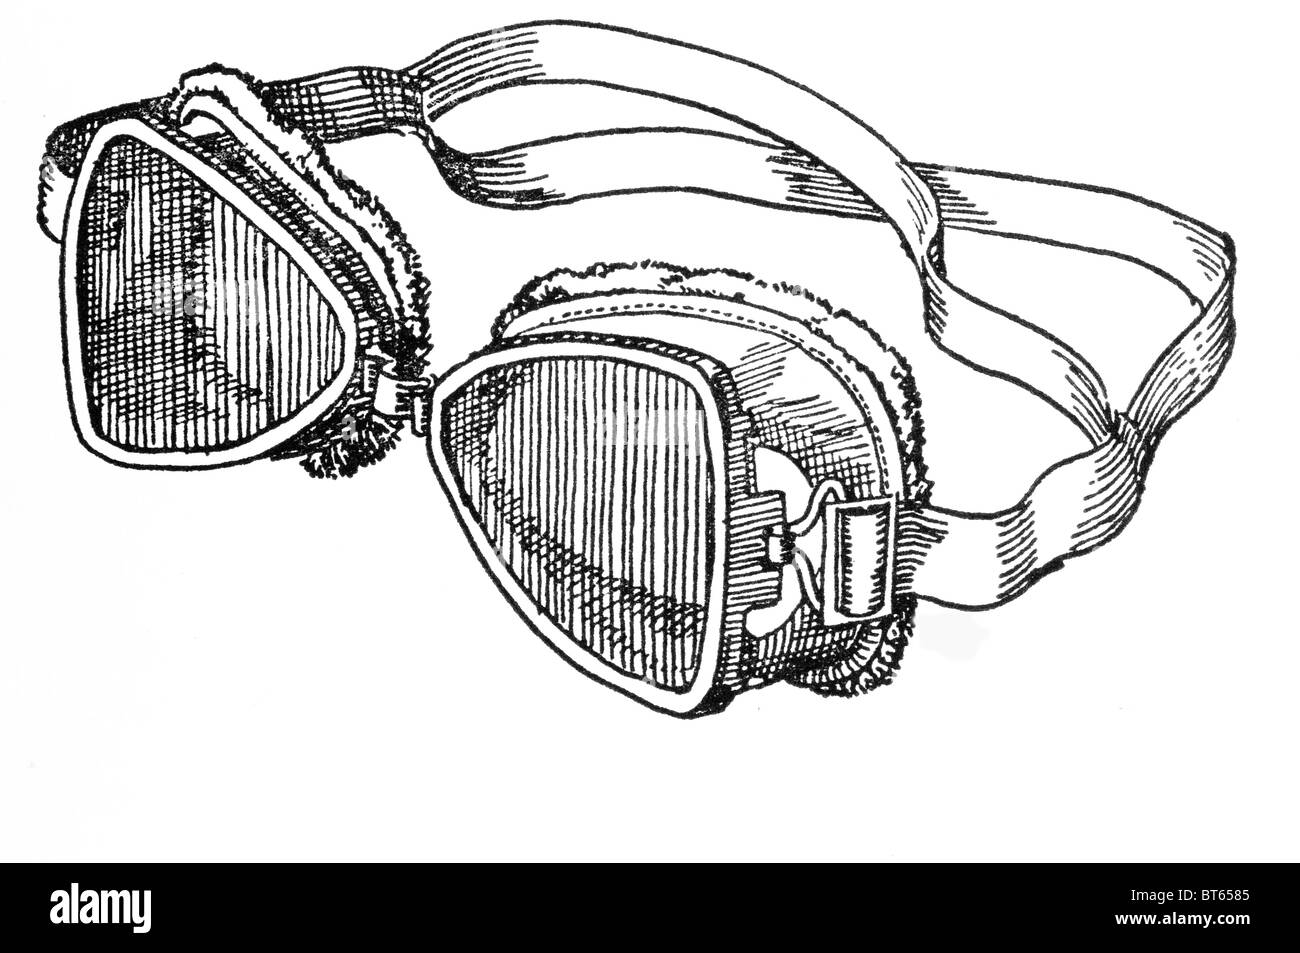 Explorar exploración Antártida ártico gafas de protección ocular Gafas de nieve ski son formas de gafas protectoras que usuall Foto de stock